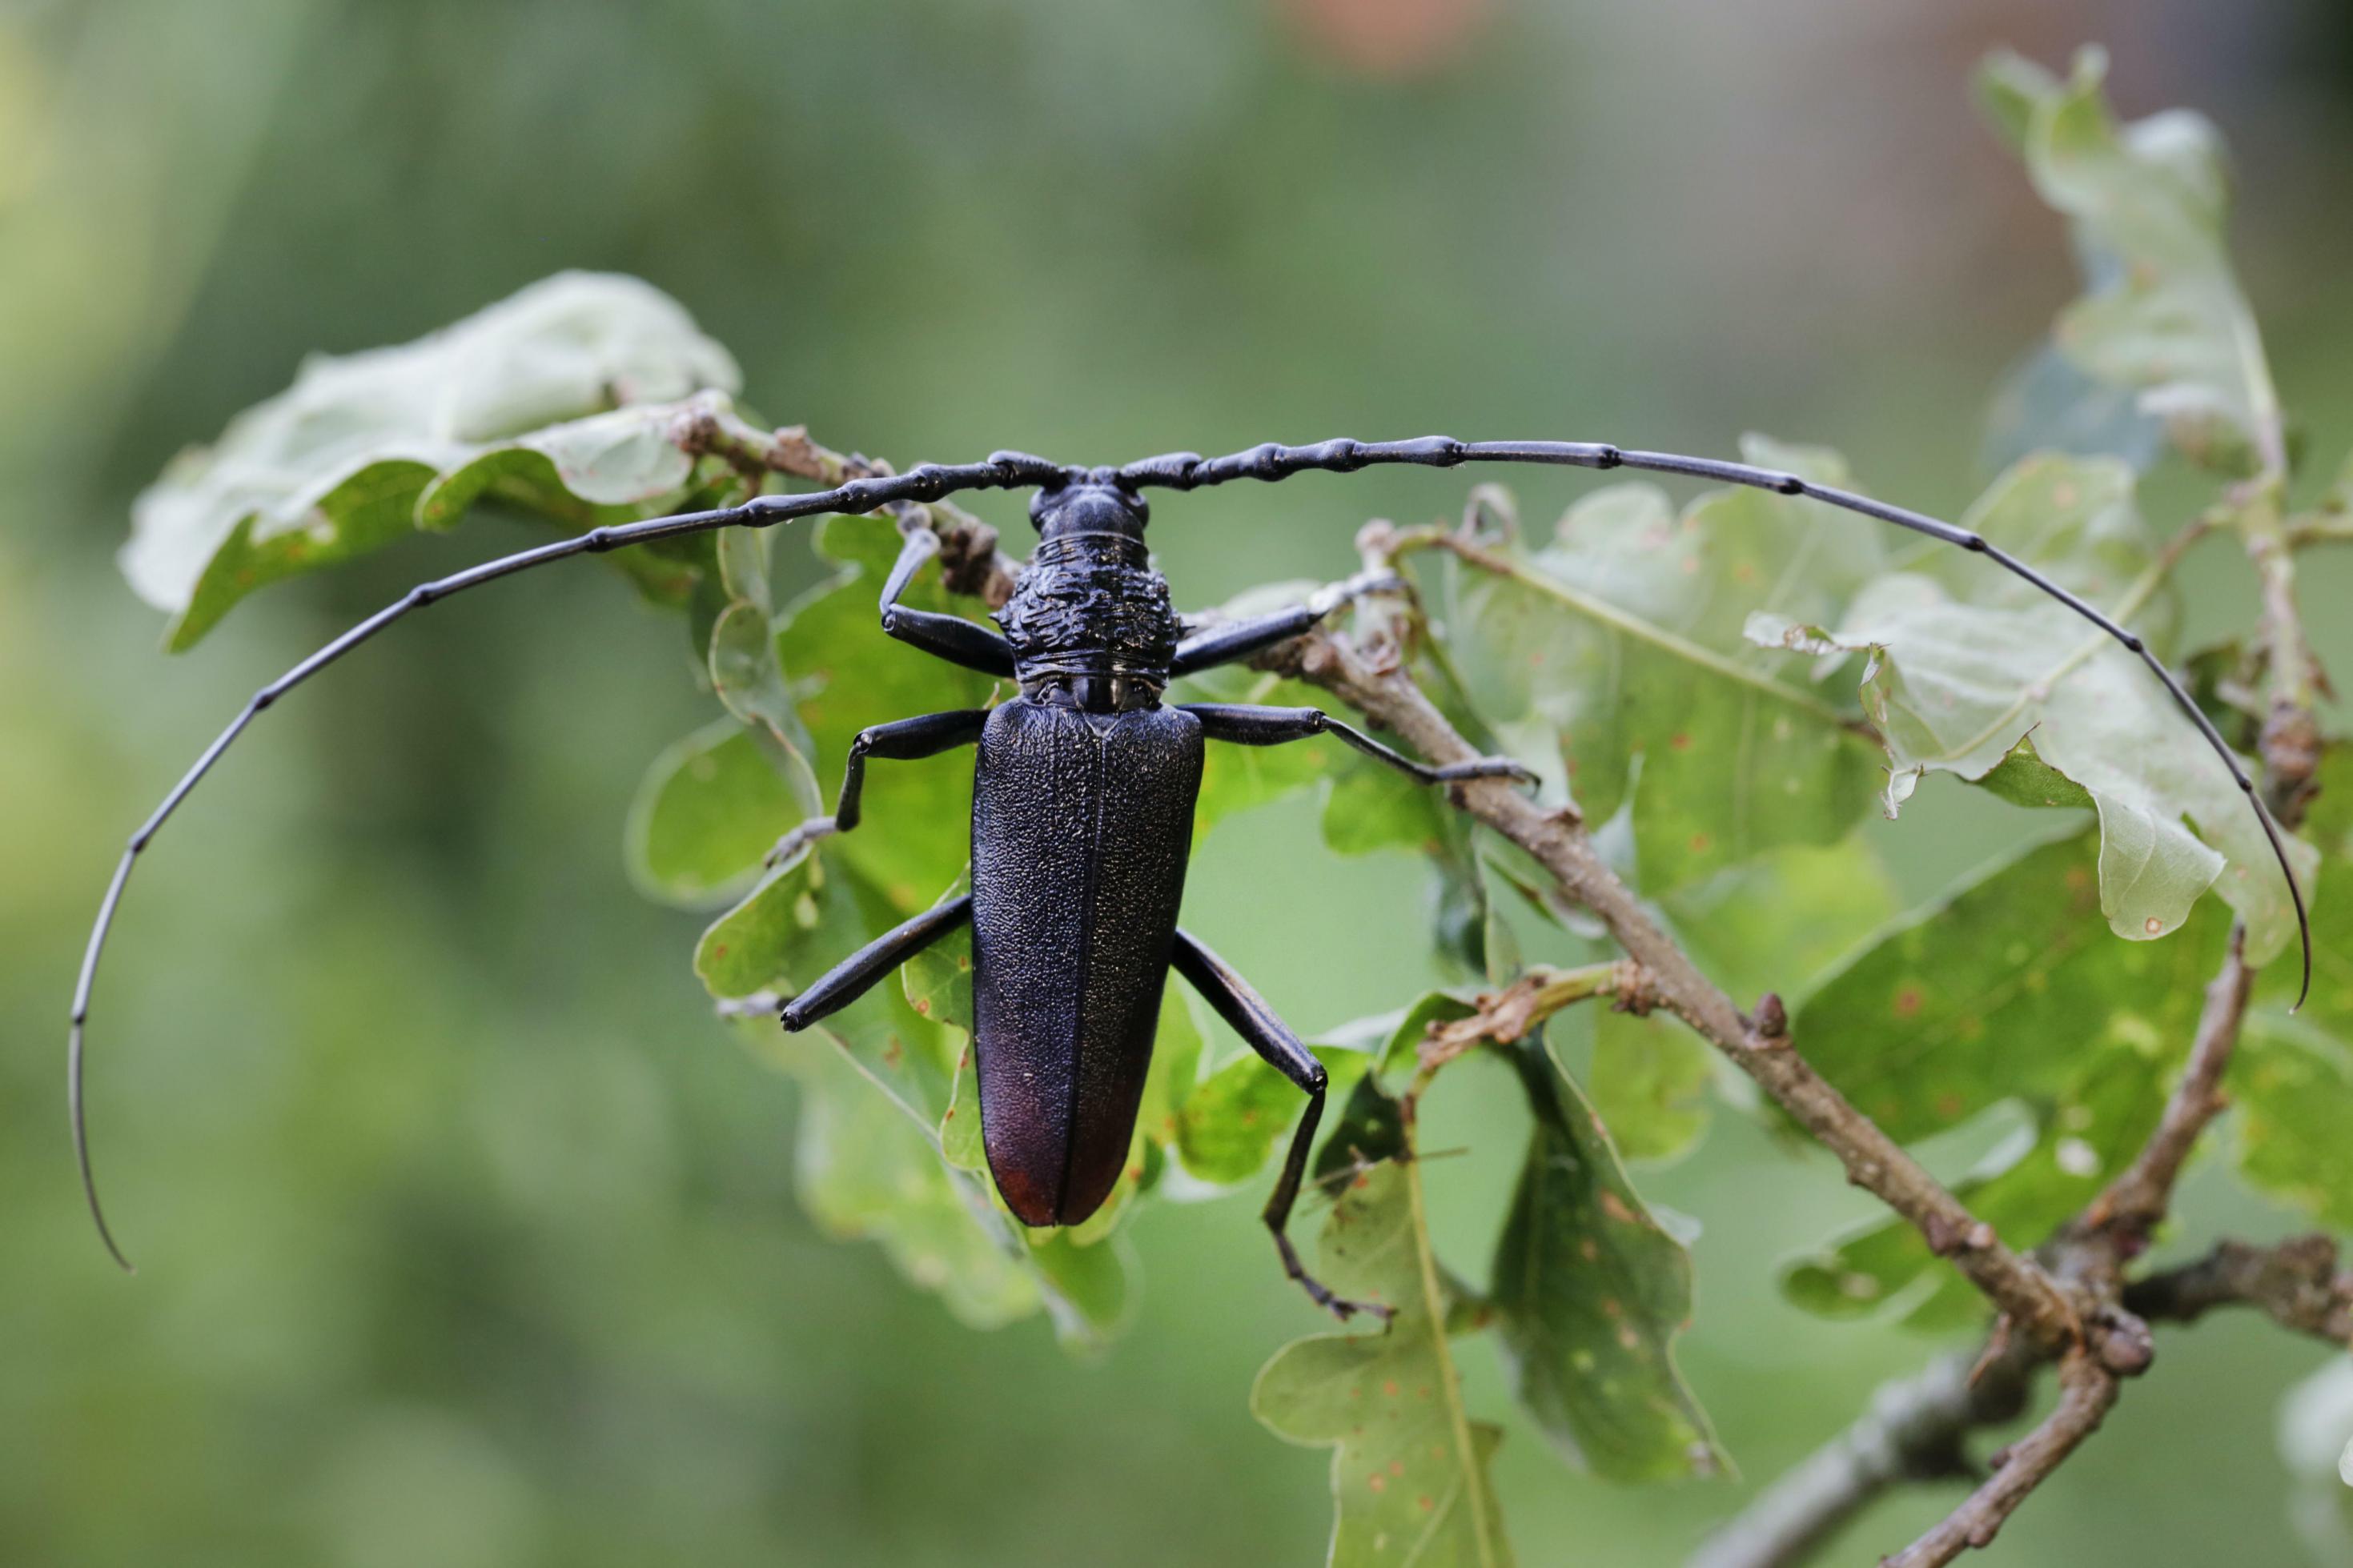 länglicher schwarz-rötlicher Käfer, 2 Antennen, jeweils mehr als  doppelt so lang wie der Körper stehen seitlich ab, hält sich mit Vorderbeinen an Eichenzweig fest